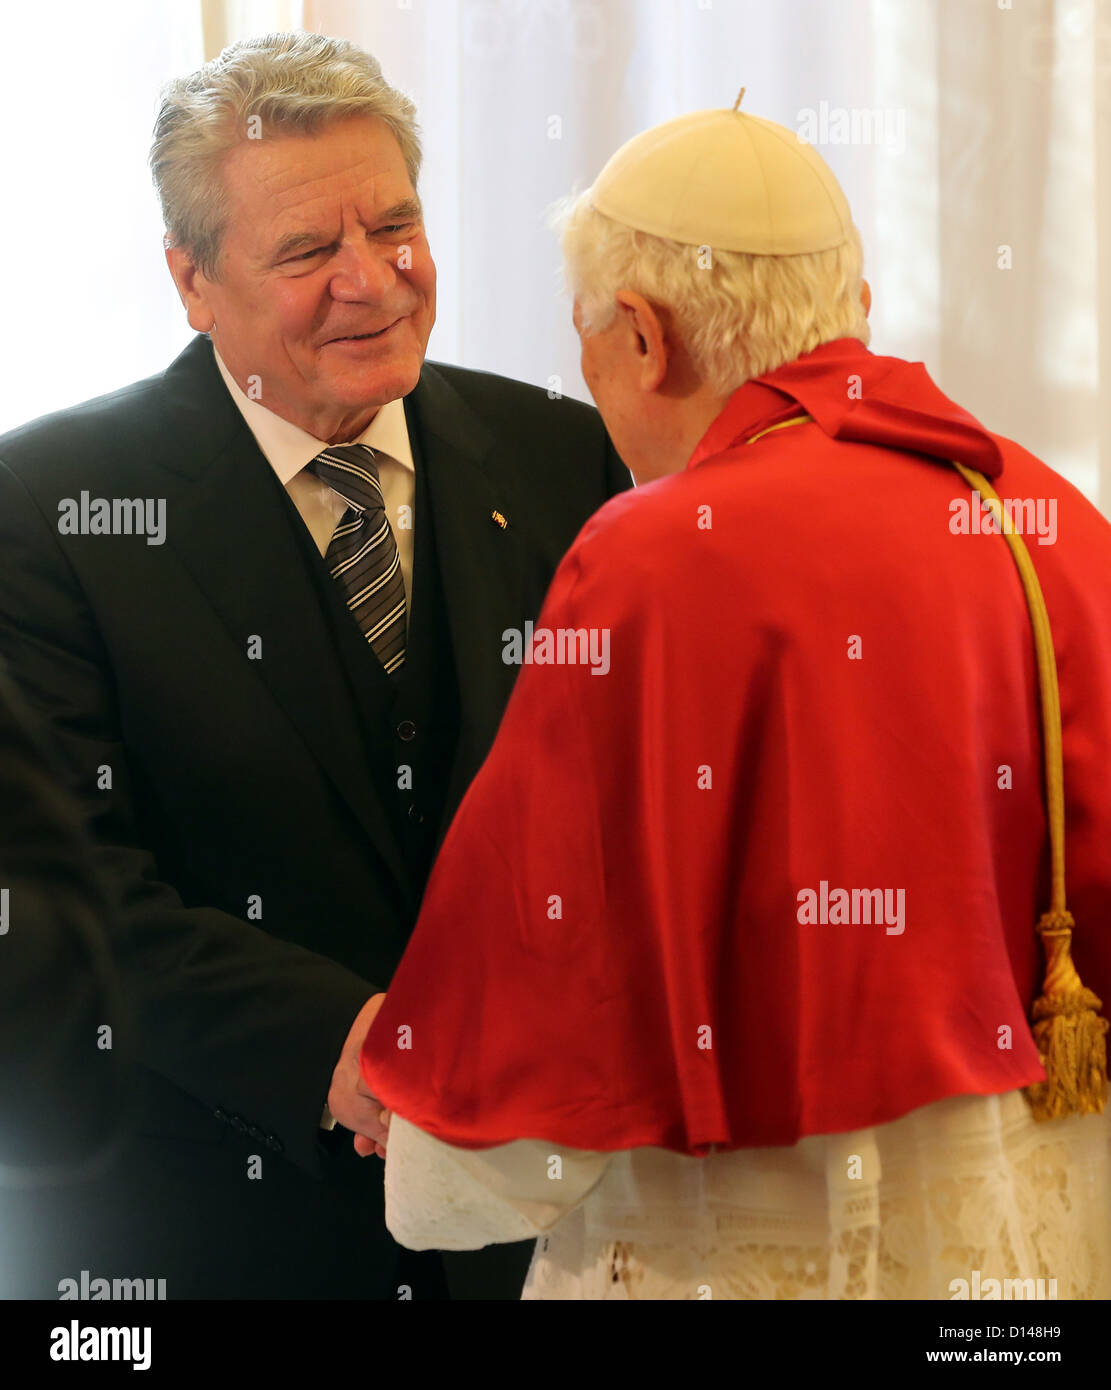 Le pape Benoît XVI bis adieu au Président allemand Joachim Gauck (L) à la basilique Saint Pierre au Vatican, Vatican, 6 décembre 2012. Le chef de l'état allemand est sur une visite d'Etat de deux jours au Saint-Siège avant de poursuivre son voyage en Croatie. Photo : Wolfgang Kumm Banque D'Images